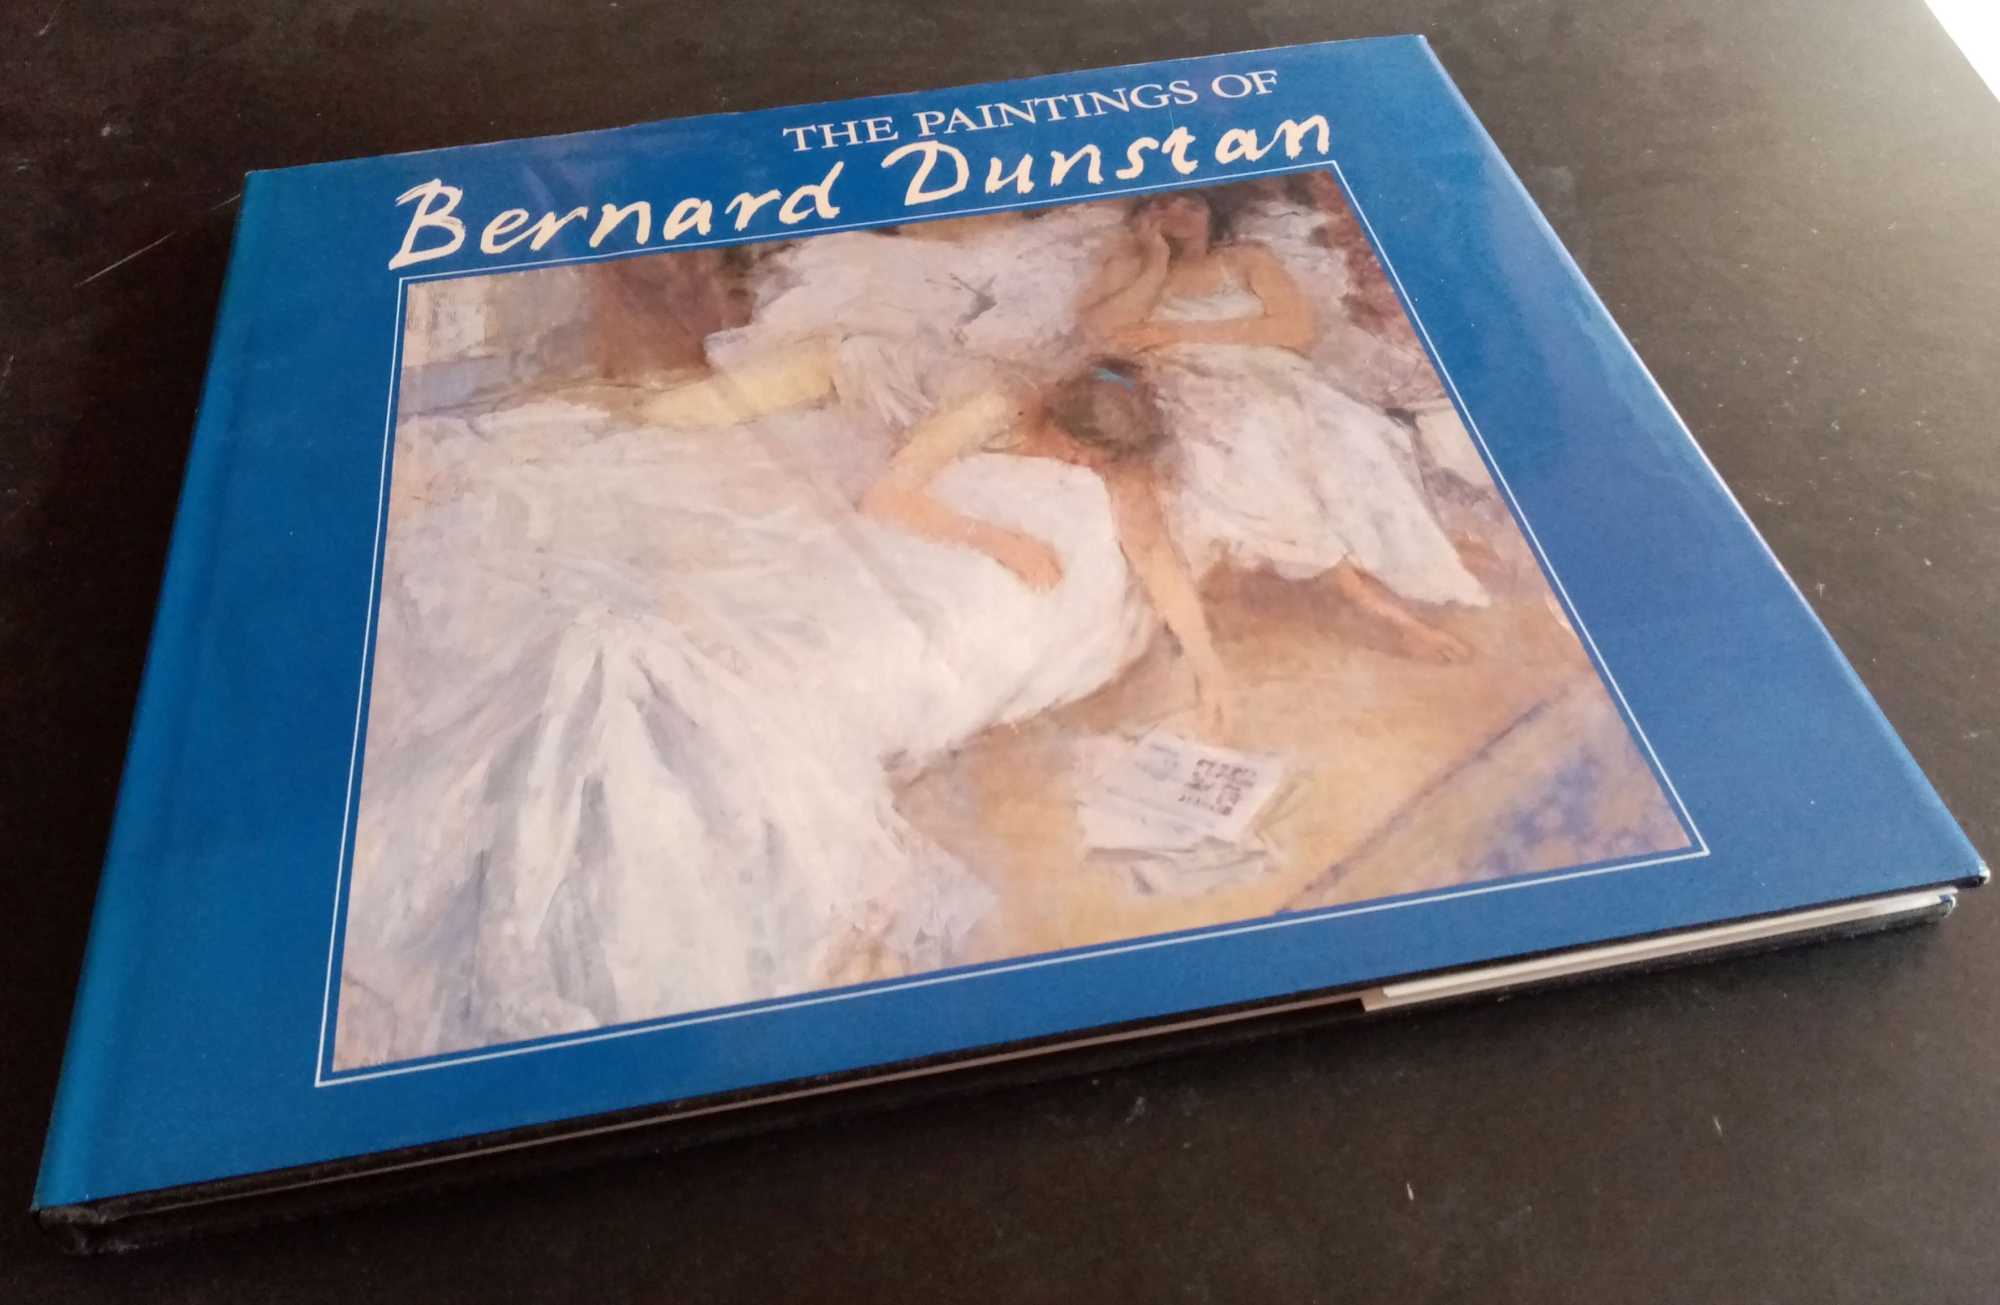 Bernard Dunstan - The Paintings of Bernard Dunstan